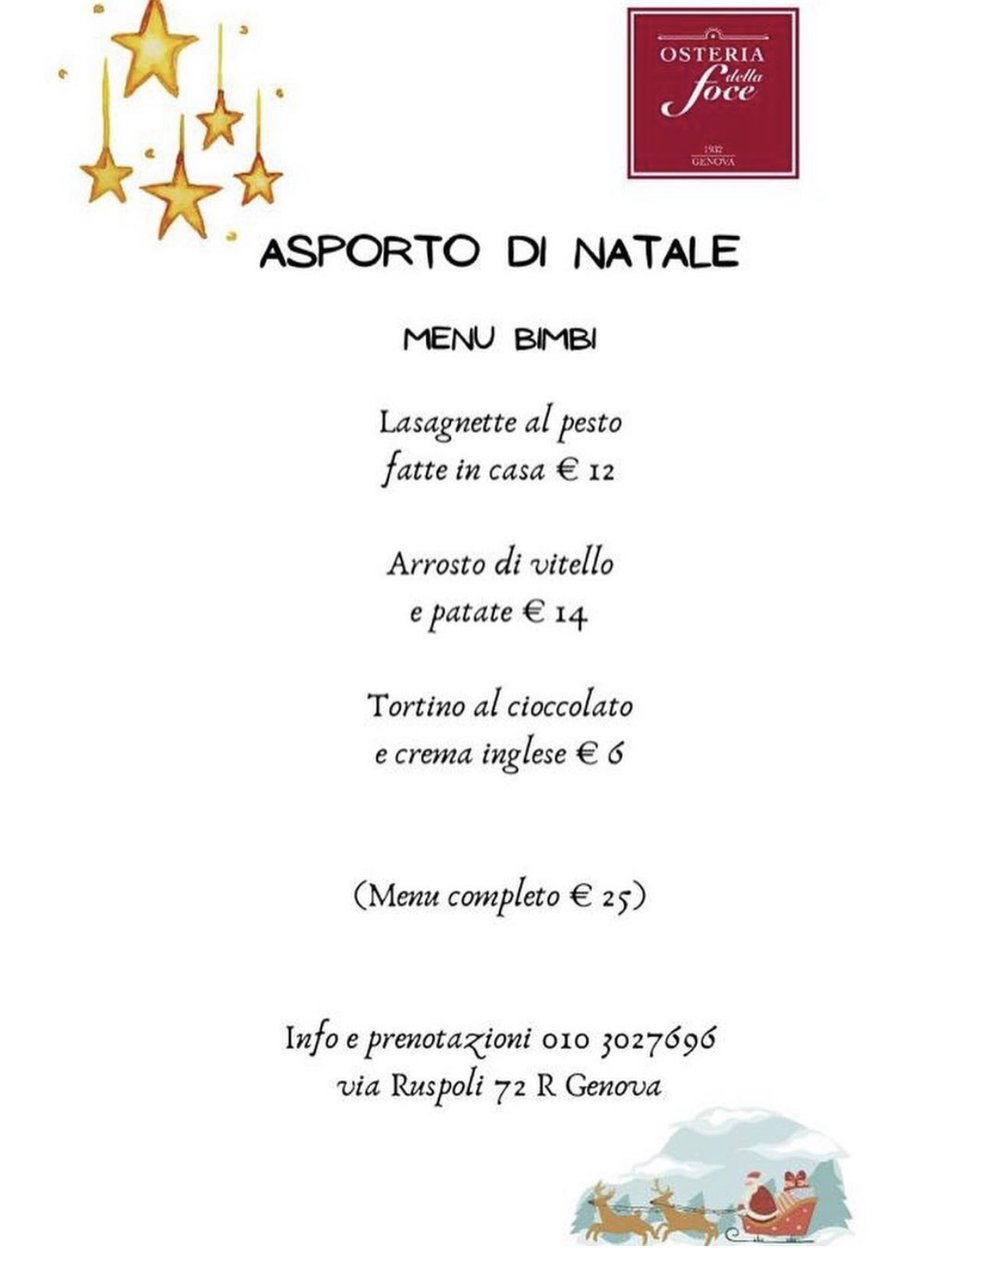 menu-natale-genova-osteria-della-foce-3.jpg